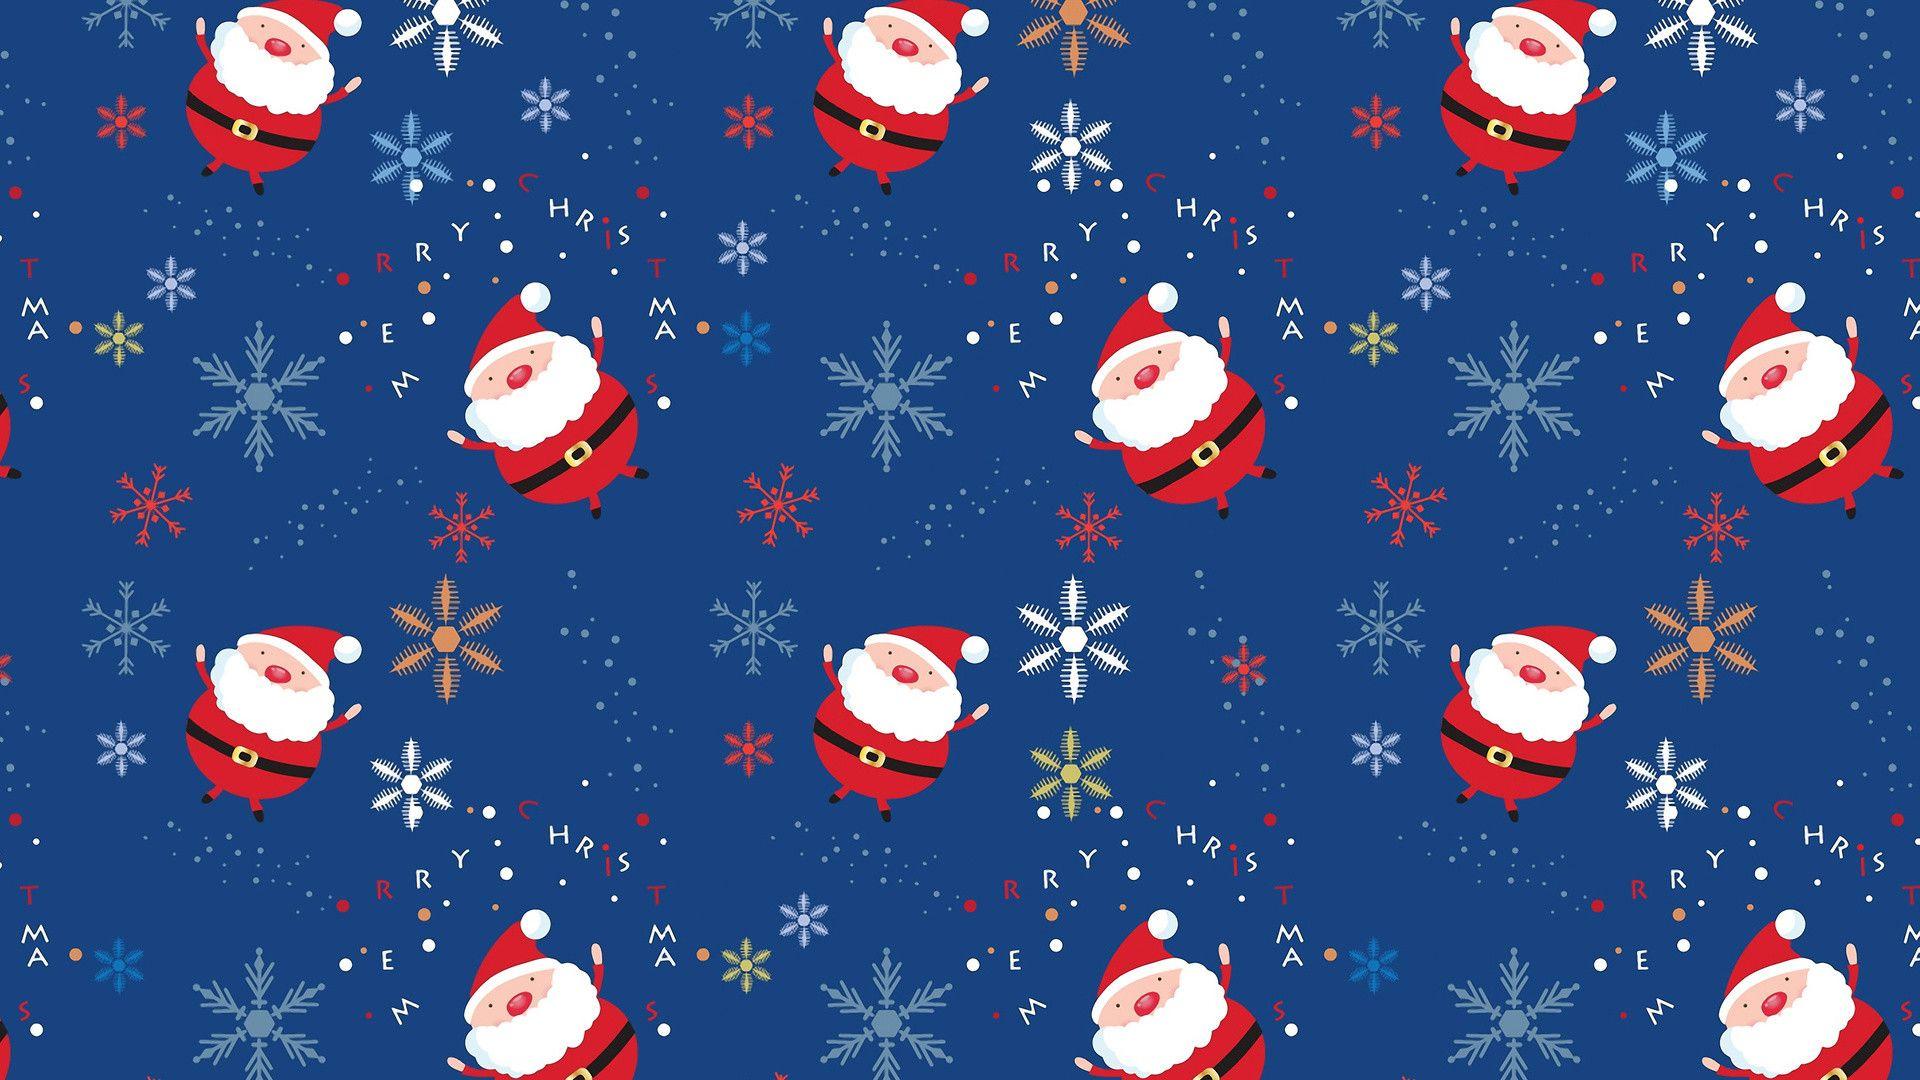 Animated Christmas Lights Wallpaper